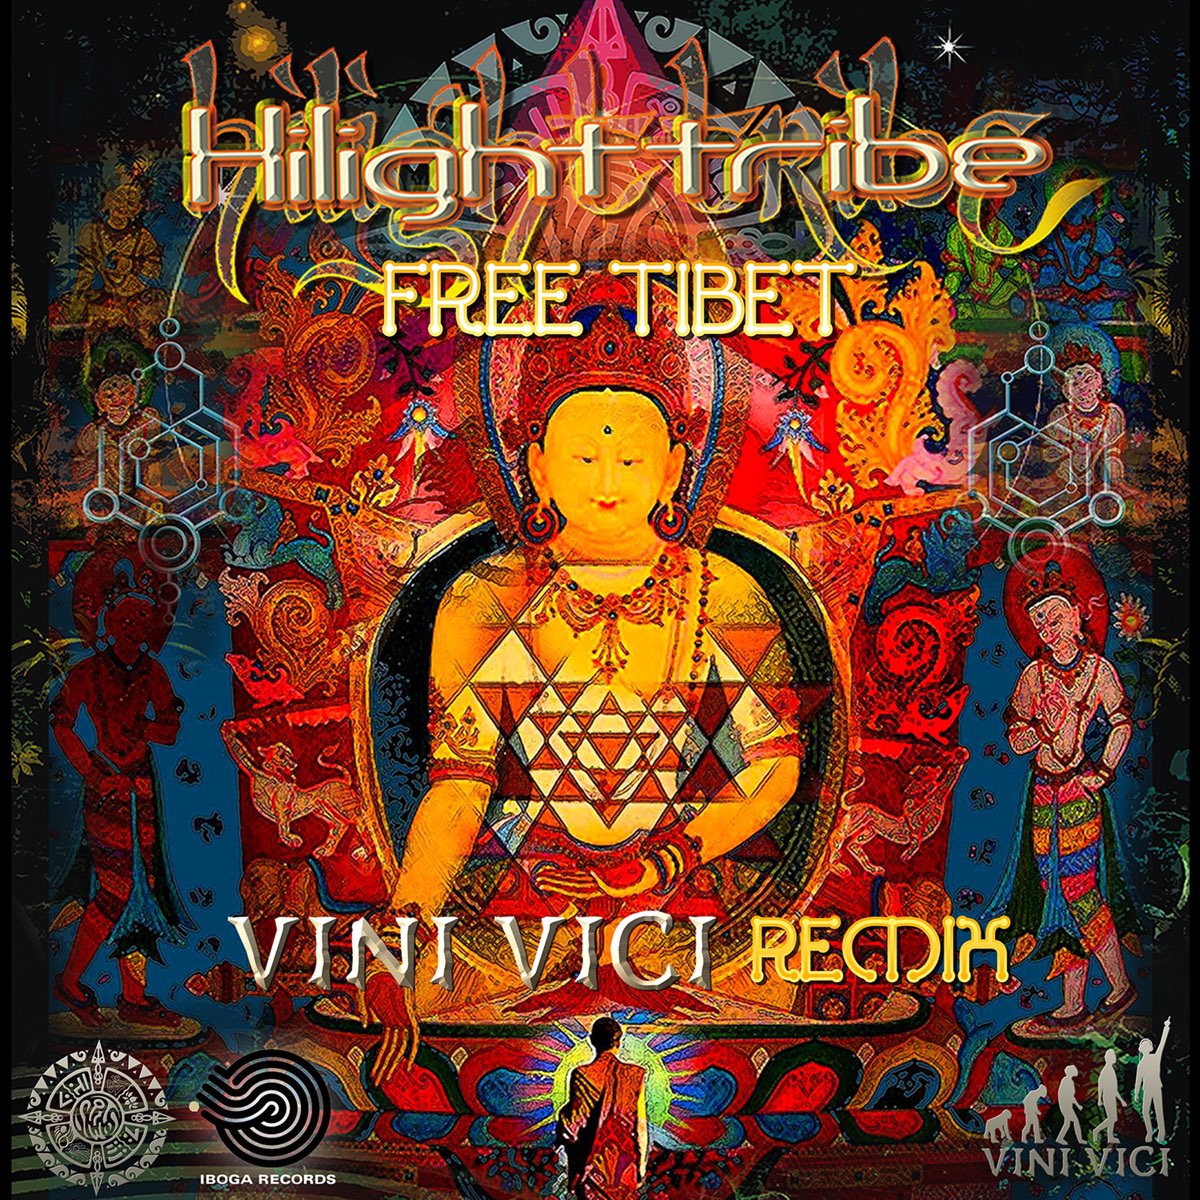 Вини Вичи ирайбл Тибет. Highlight Tribe. Hilight tribe